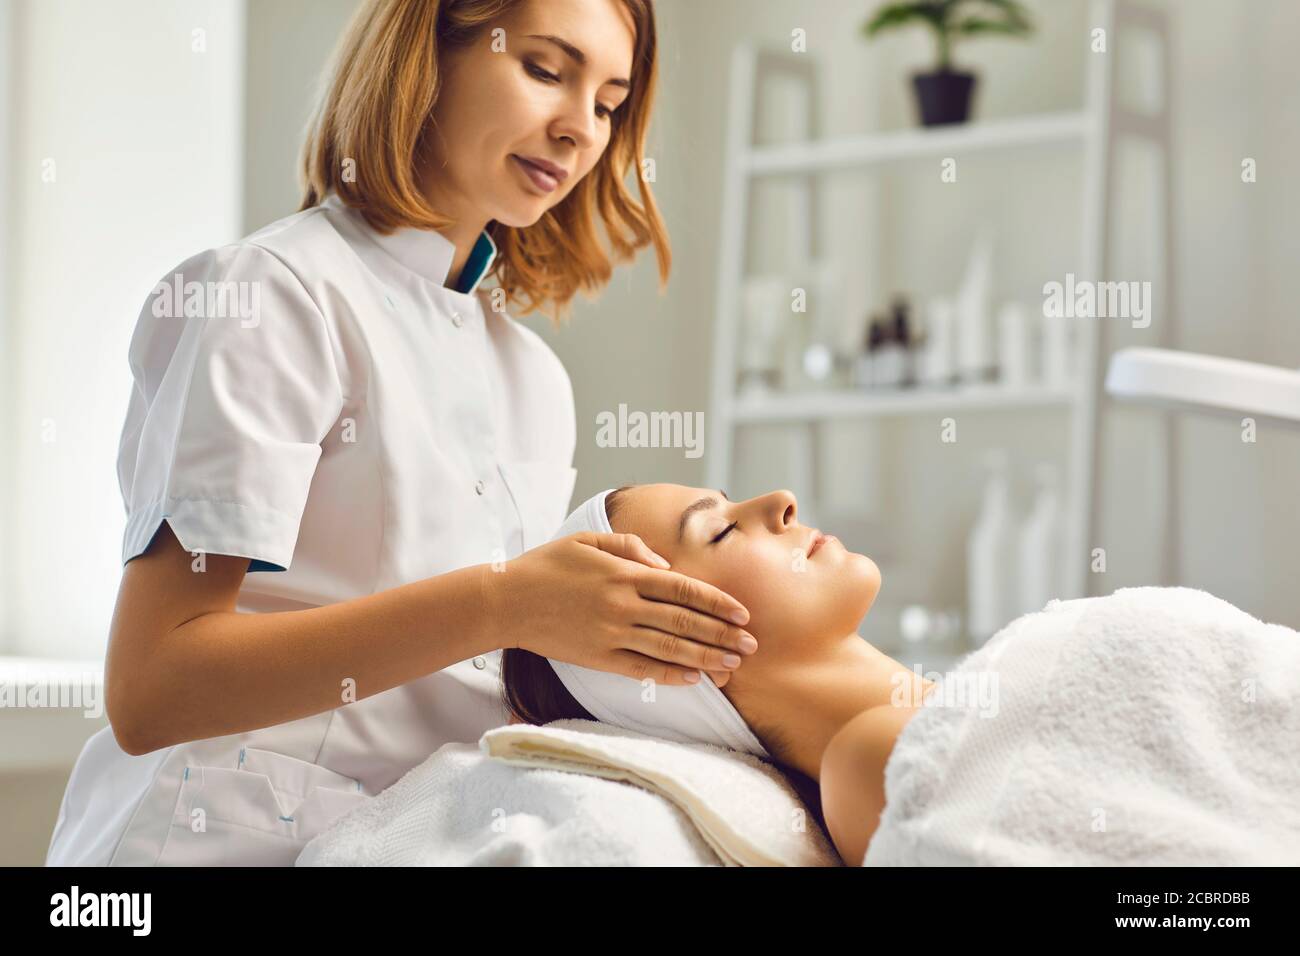 Procédures de soin de la peau du visage. Une esthéticienne fait un massage avec le visage d'une femme dans une clinique cosmétique Banque D'Images